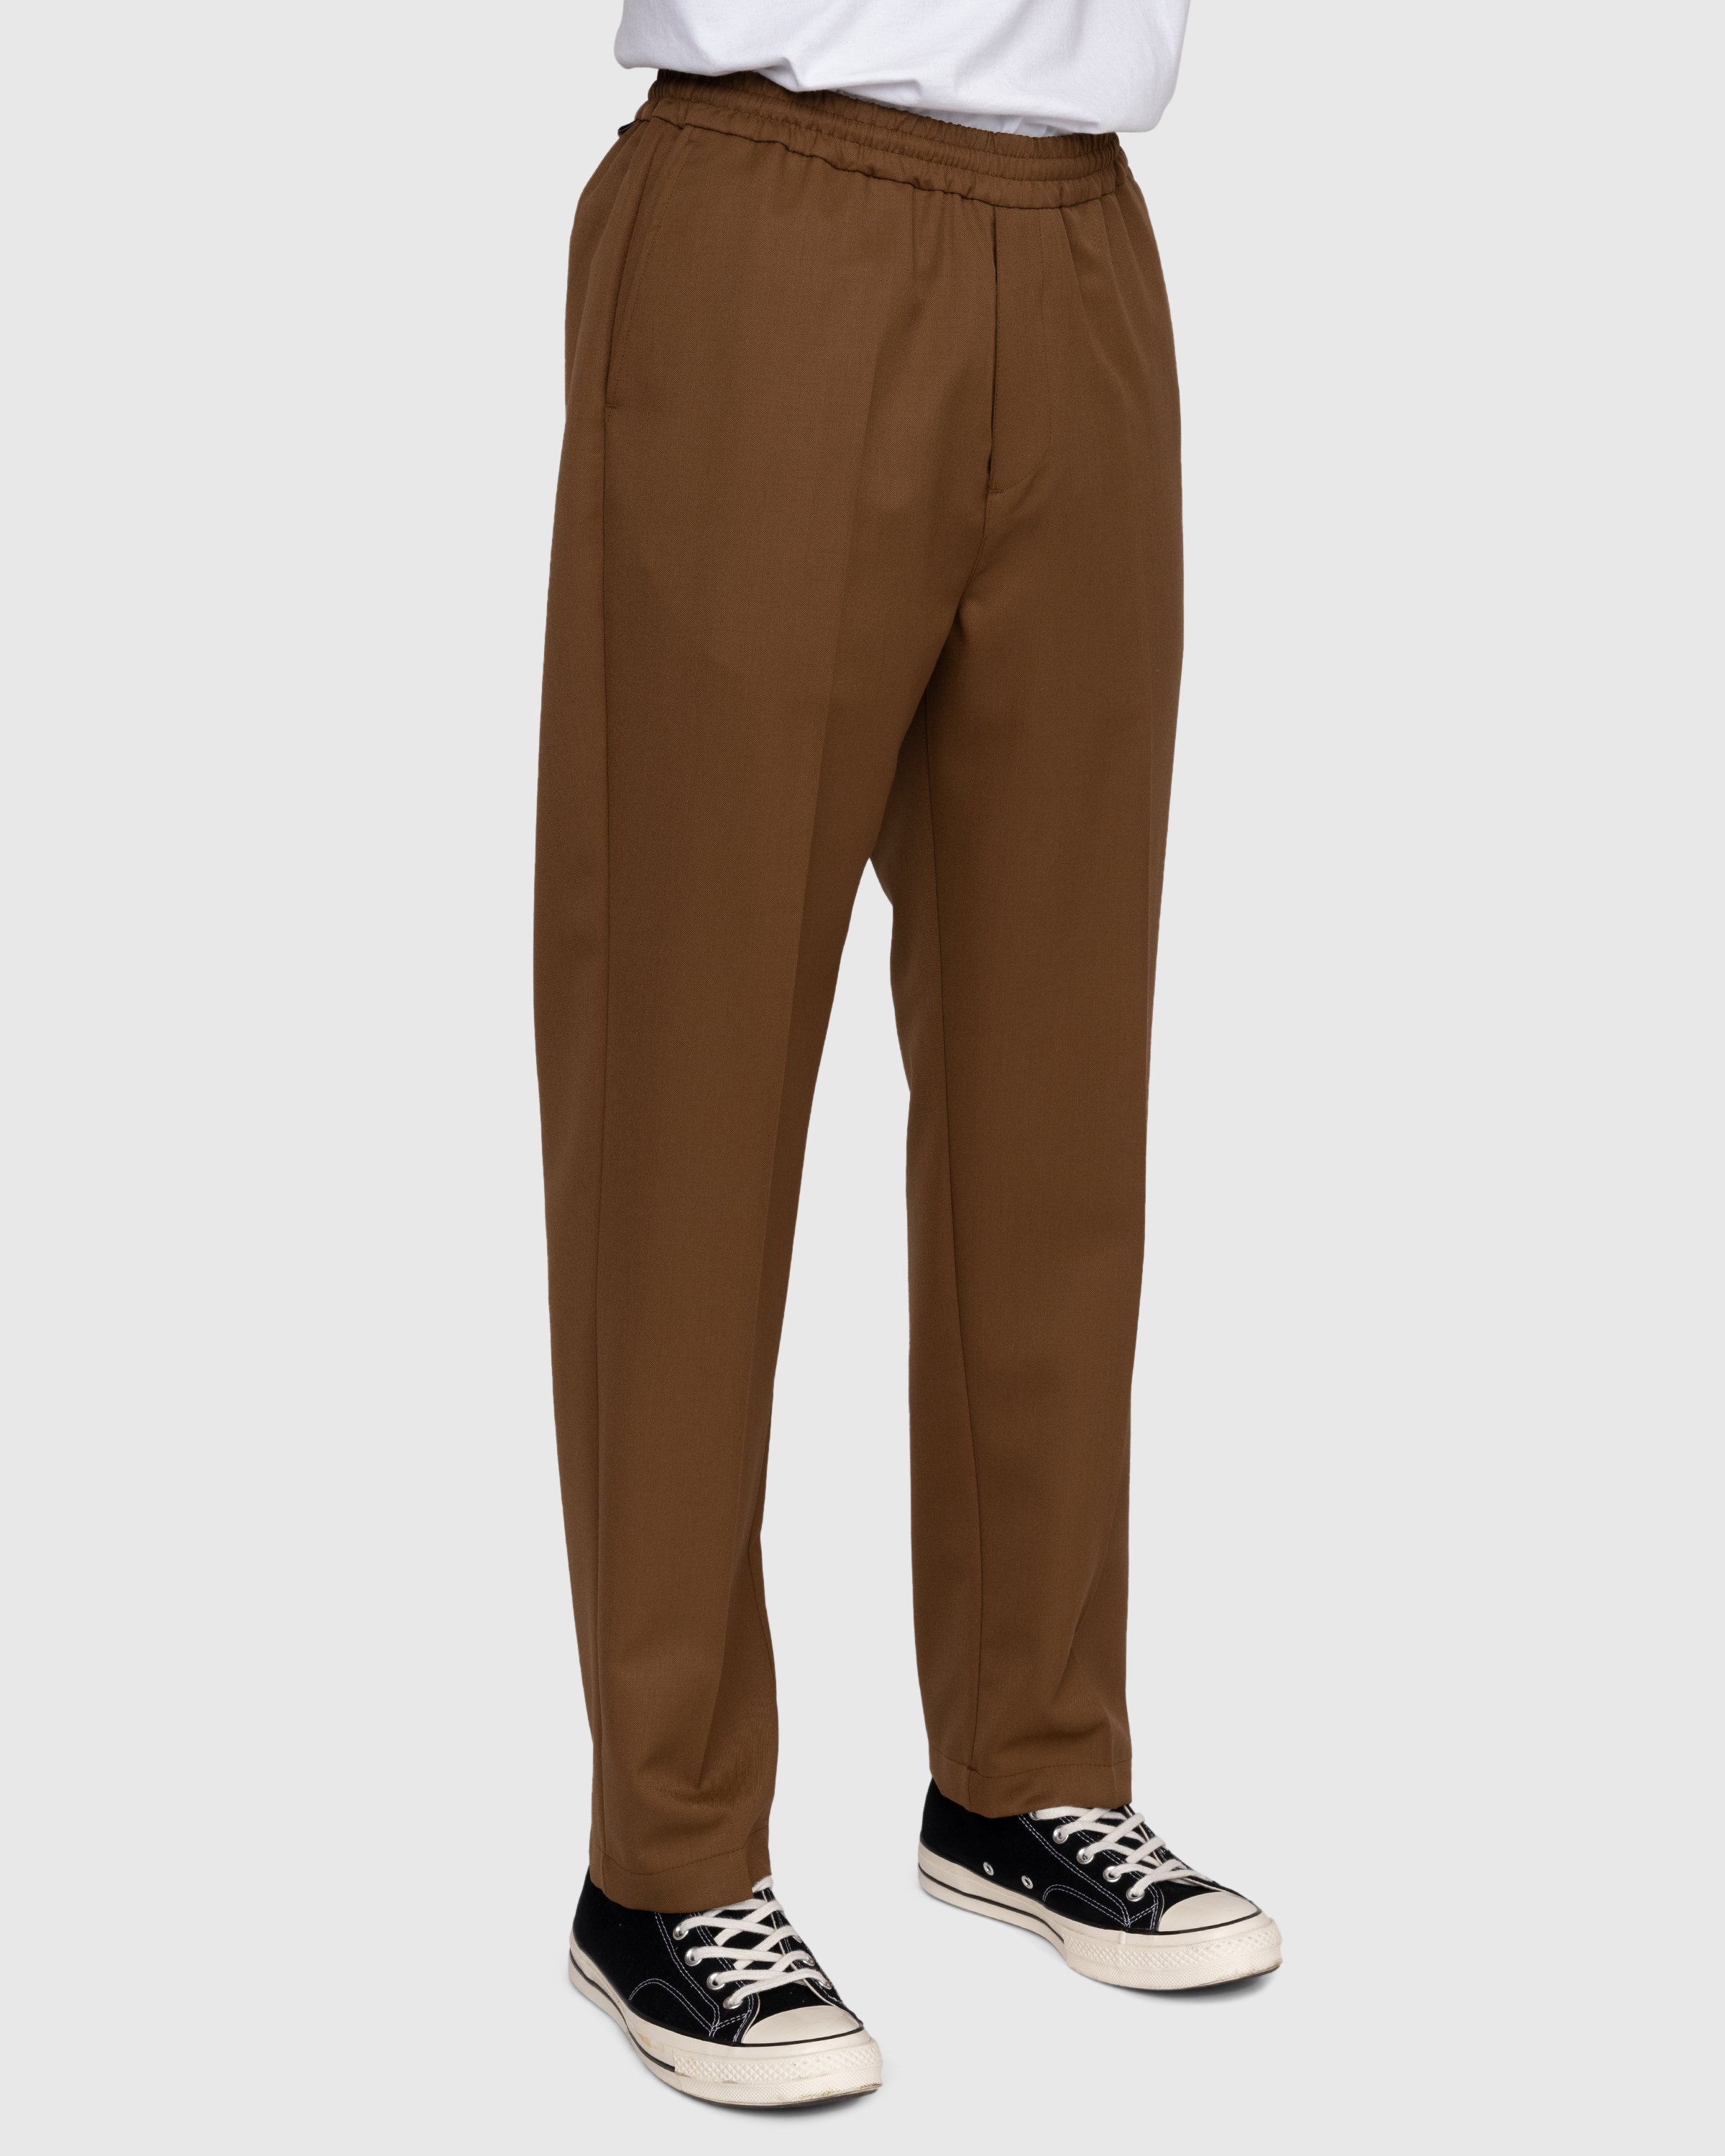 Highsnobiety - Wool Blend Elastic Pants Brown - Clothing - Brown - Image 3